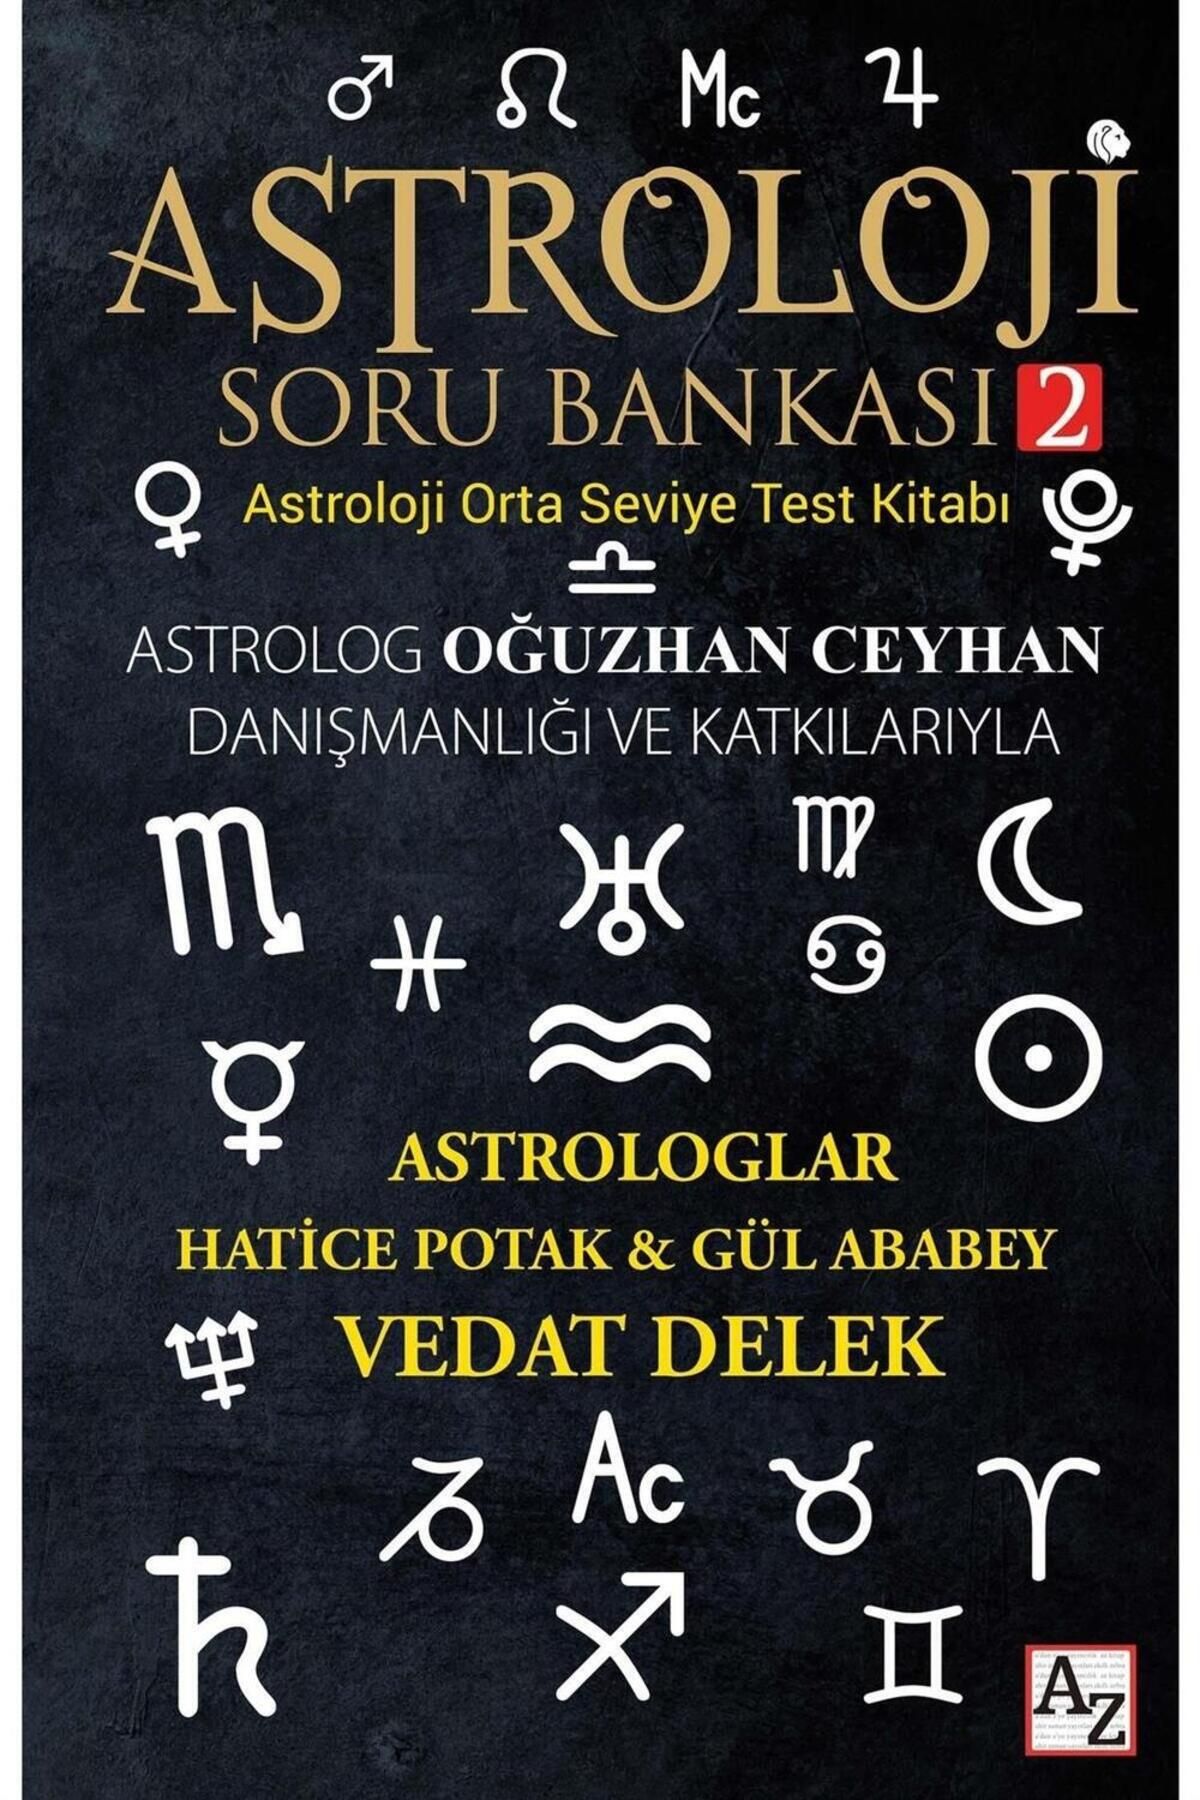 Az Kitap Astroloji Soru Bankası 2 - Hatice Potak-Gül Ababey- Vedat Delek